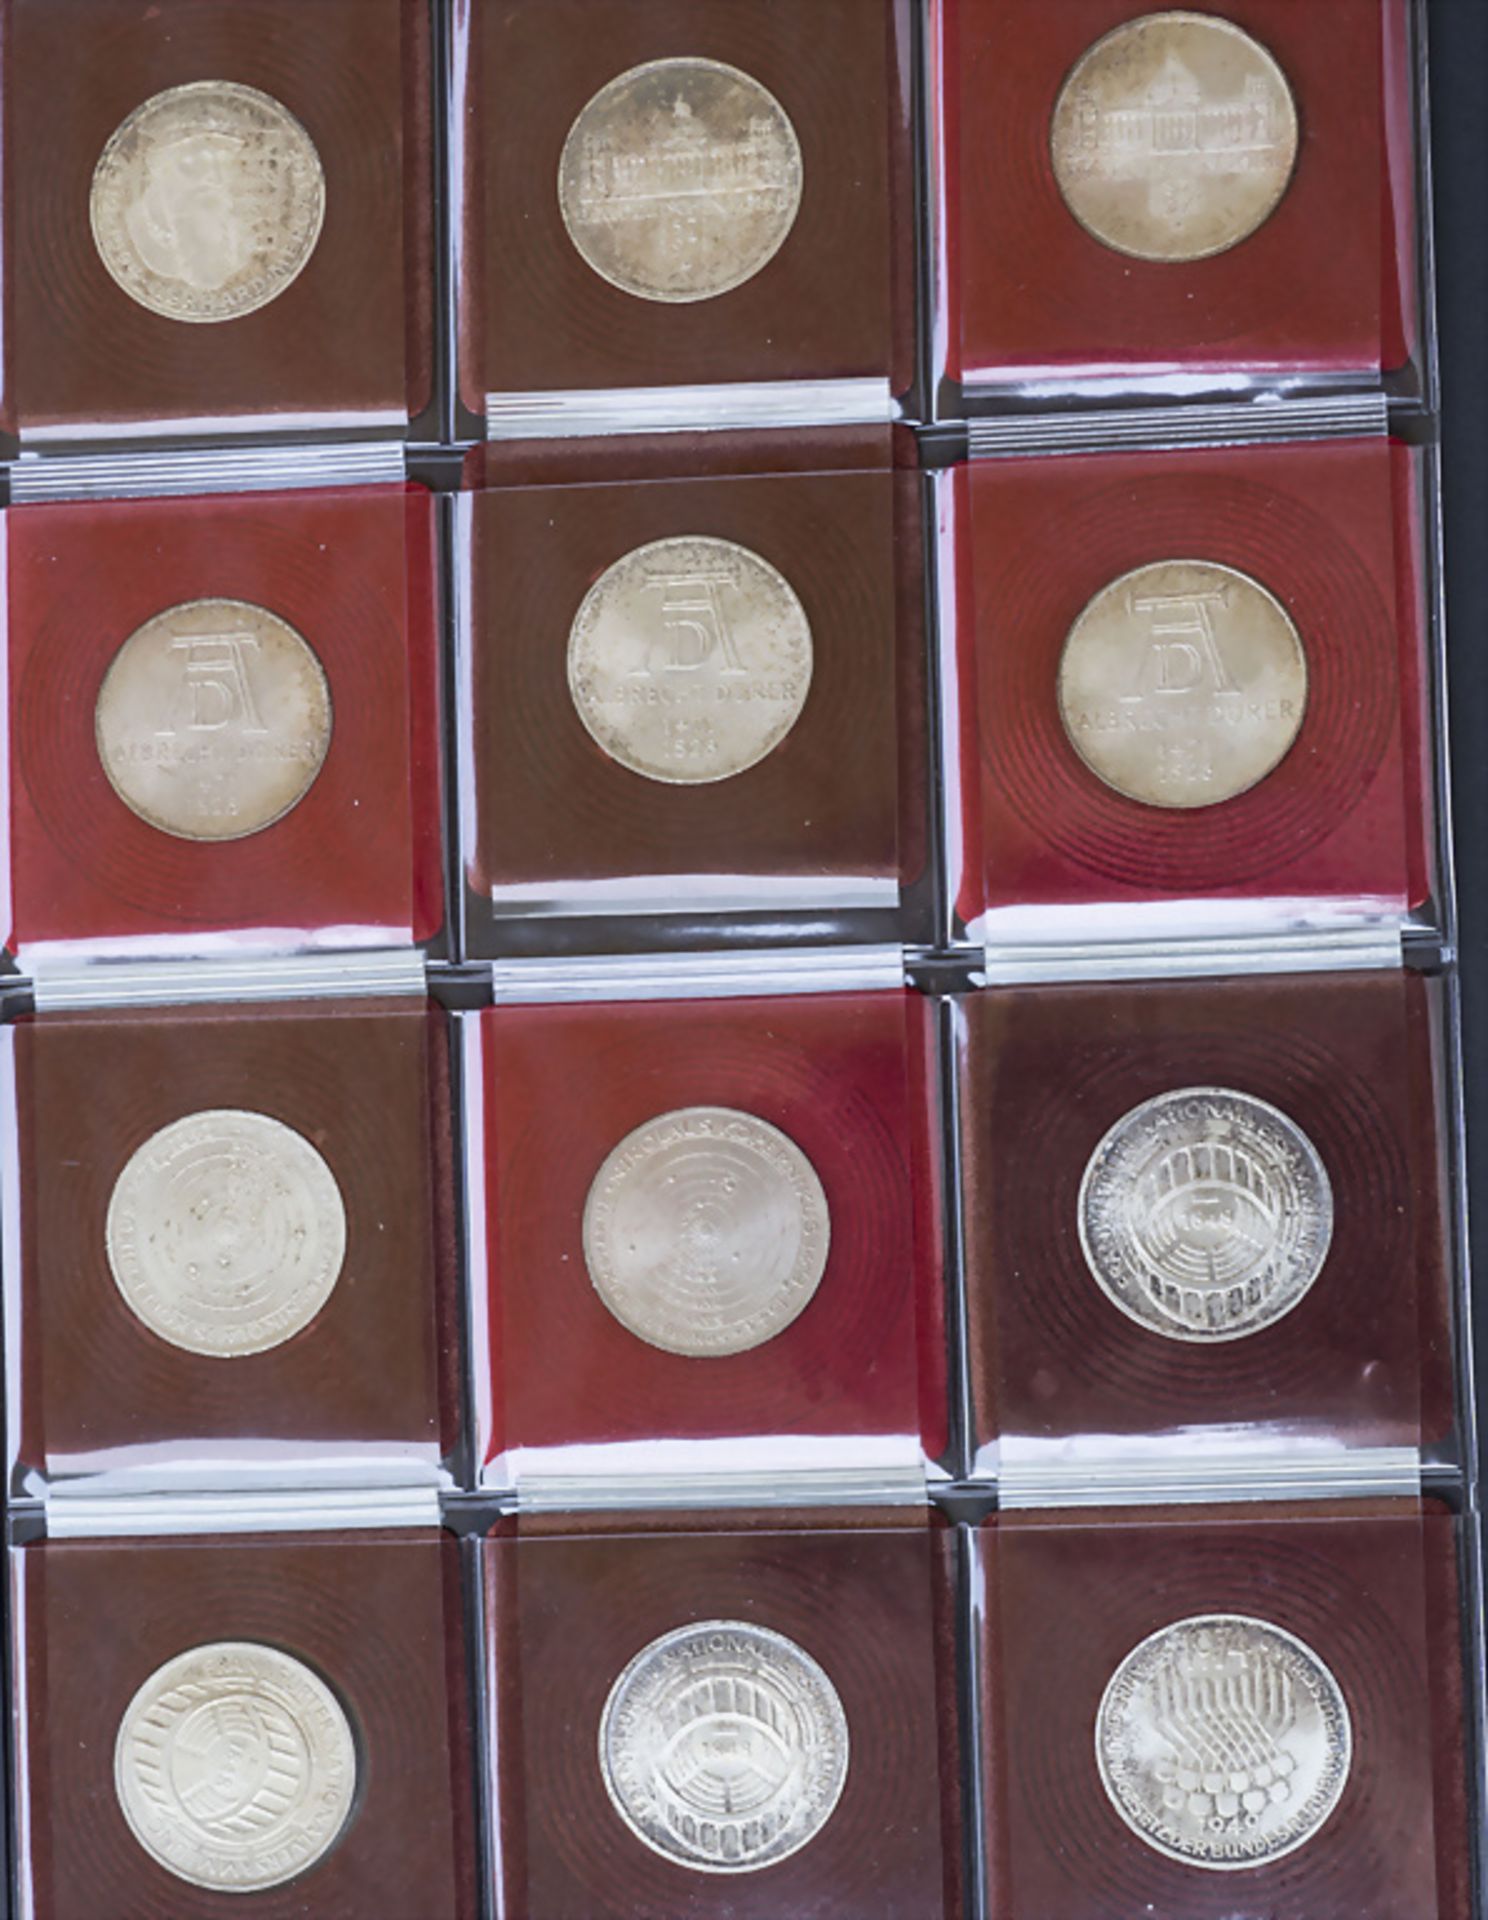 Sammlung 5 und 10 DM Gedenkmünzen / A collection of 5 and 10 DM commemorative coins